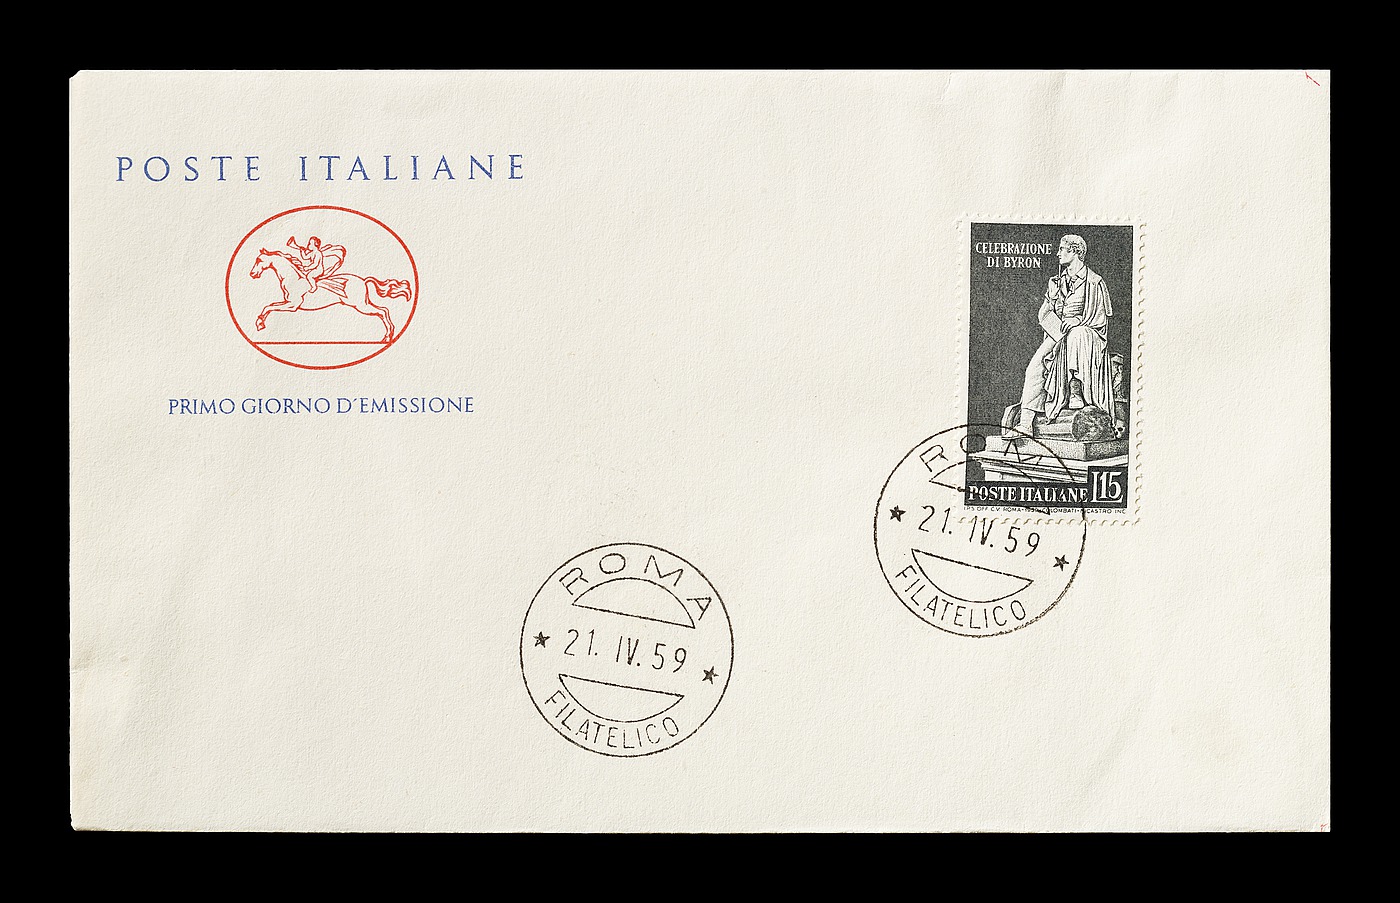 Førstedagskuvert med italiensk frimærke med Thorvaldsens statue af George Gordon Byron